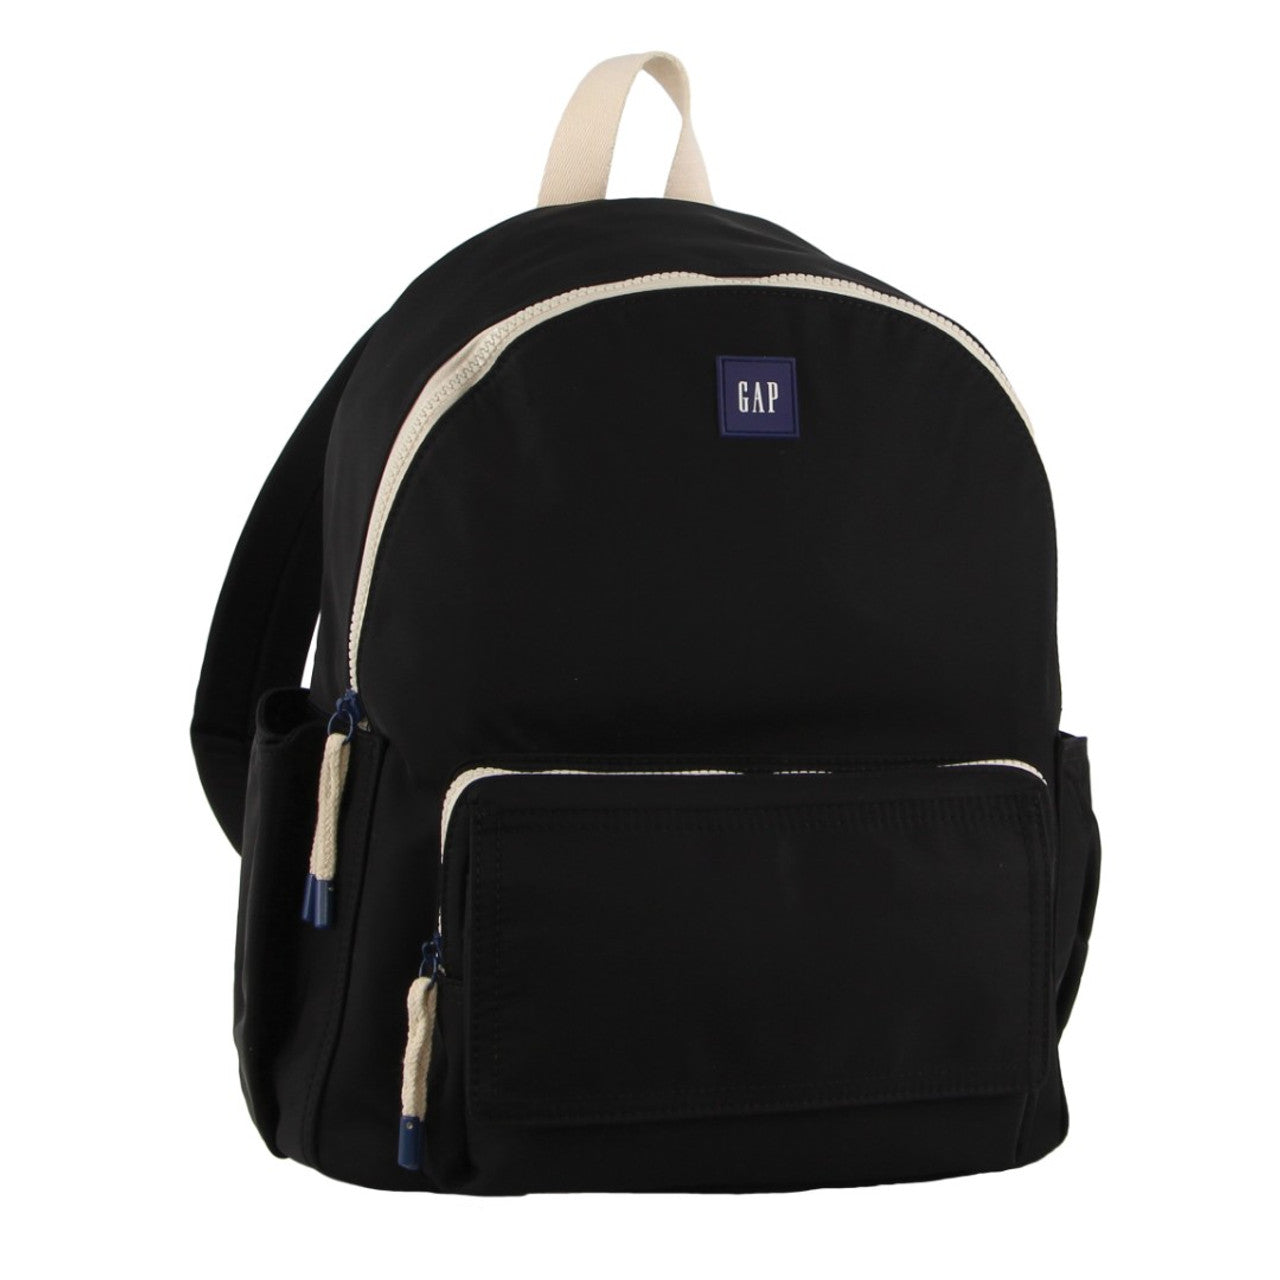 GAP - 11 Nylon Backpack front pocket - Black